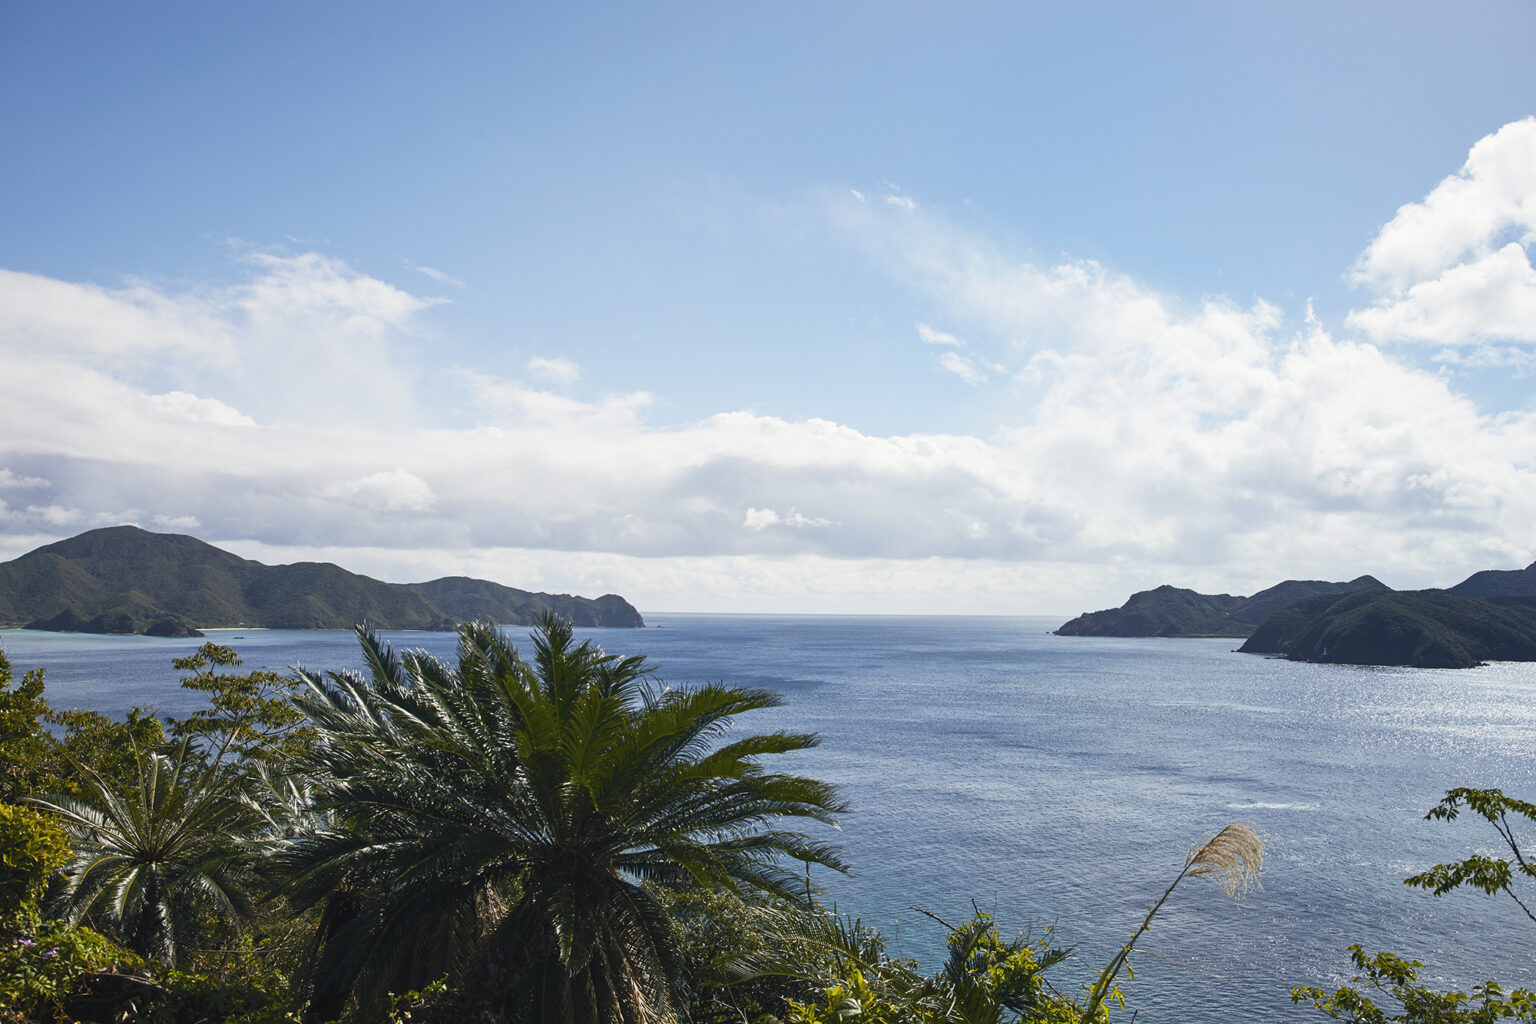 もうひとつの展望台から見えるのは、深いブルーを湛えた大島海峡と加計呂麻島。